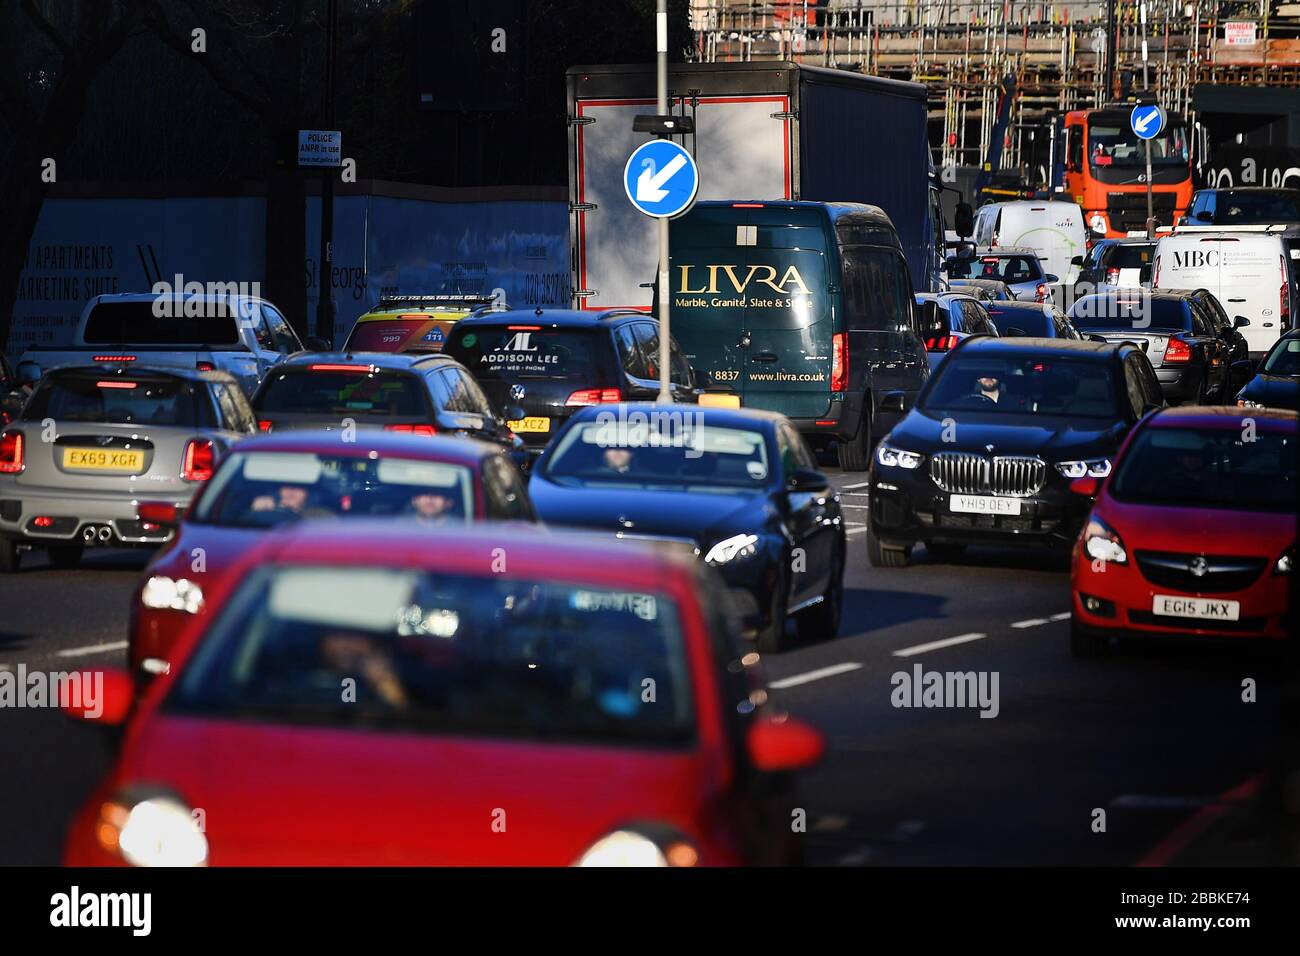 Hay mucho tráfico en una carretera principal de Wapping que se dirige a Londres durante la hora punta de la mañana, a pesar de que el Reino Unido está bloqueado para ayudar a frenar la propagación del coronavirus. Foto de stock